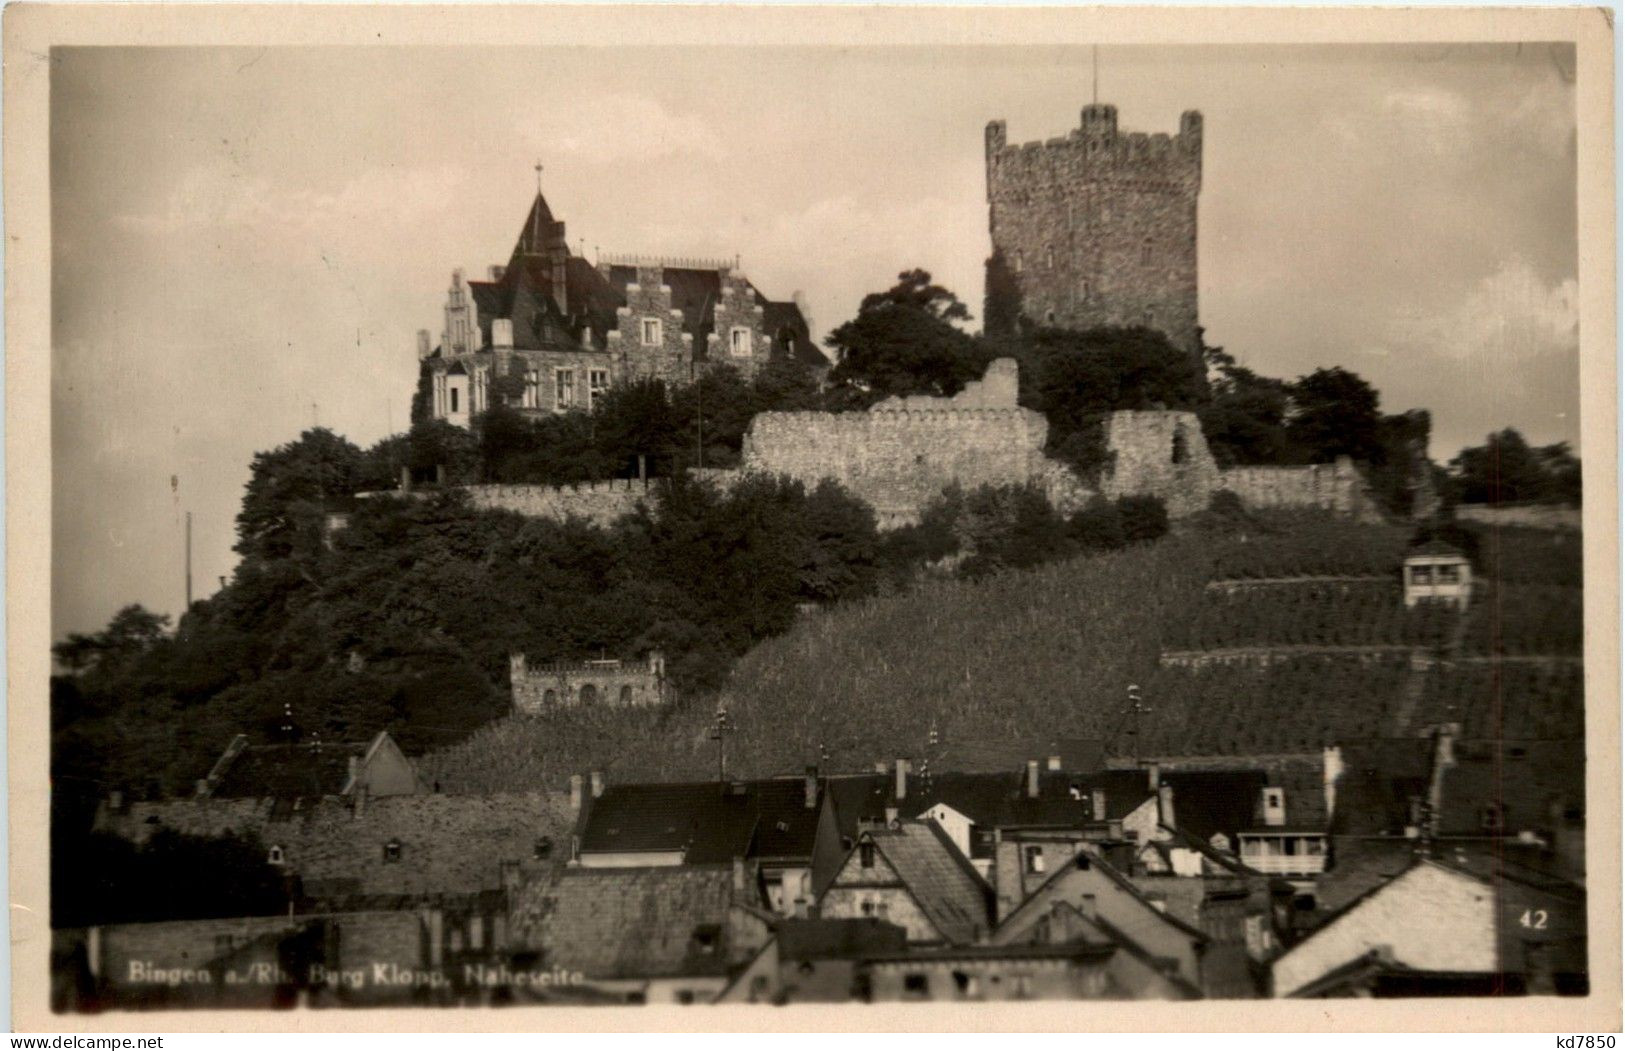 Bingen - Burg Klopp - Bingen